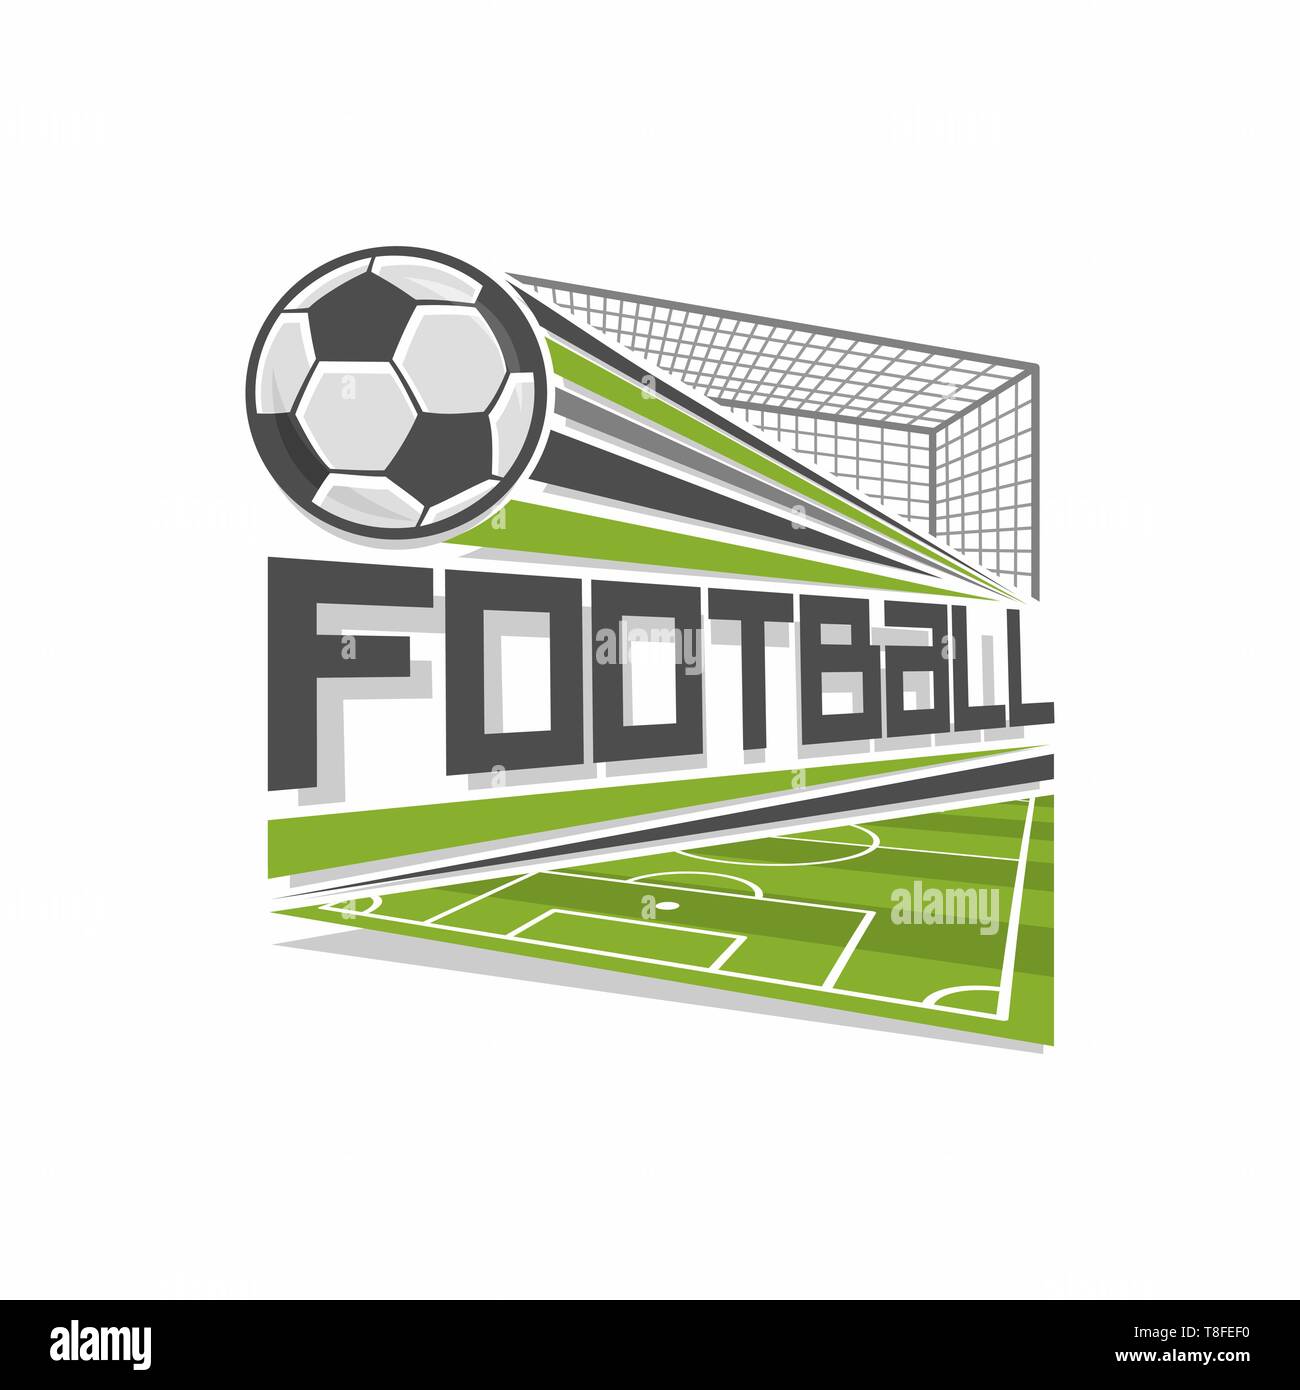 Vector football logo Stock Vector